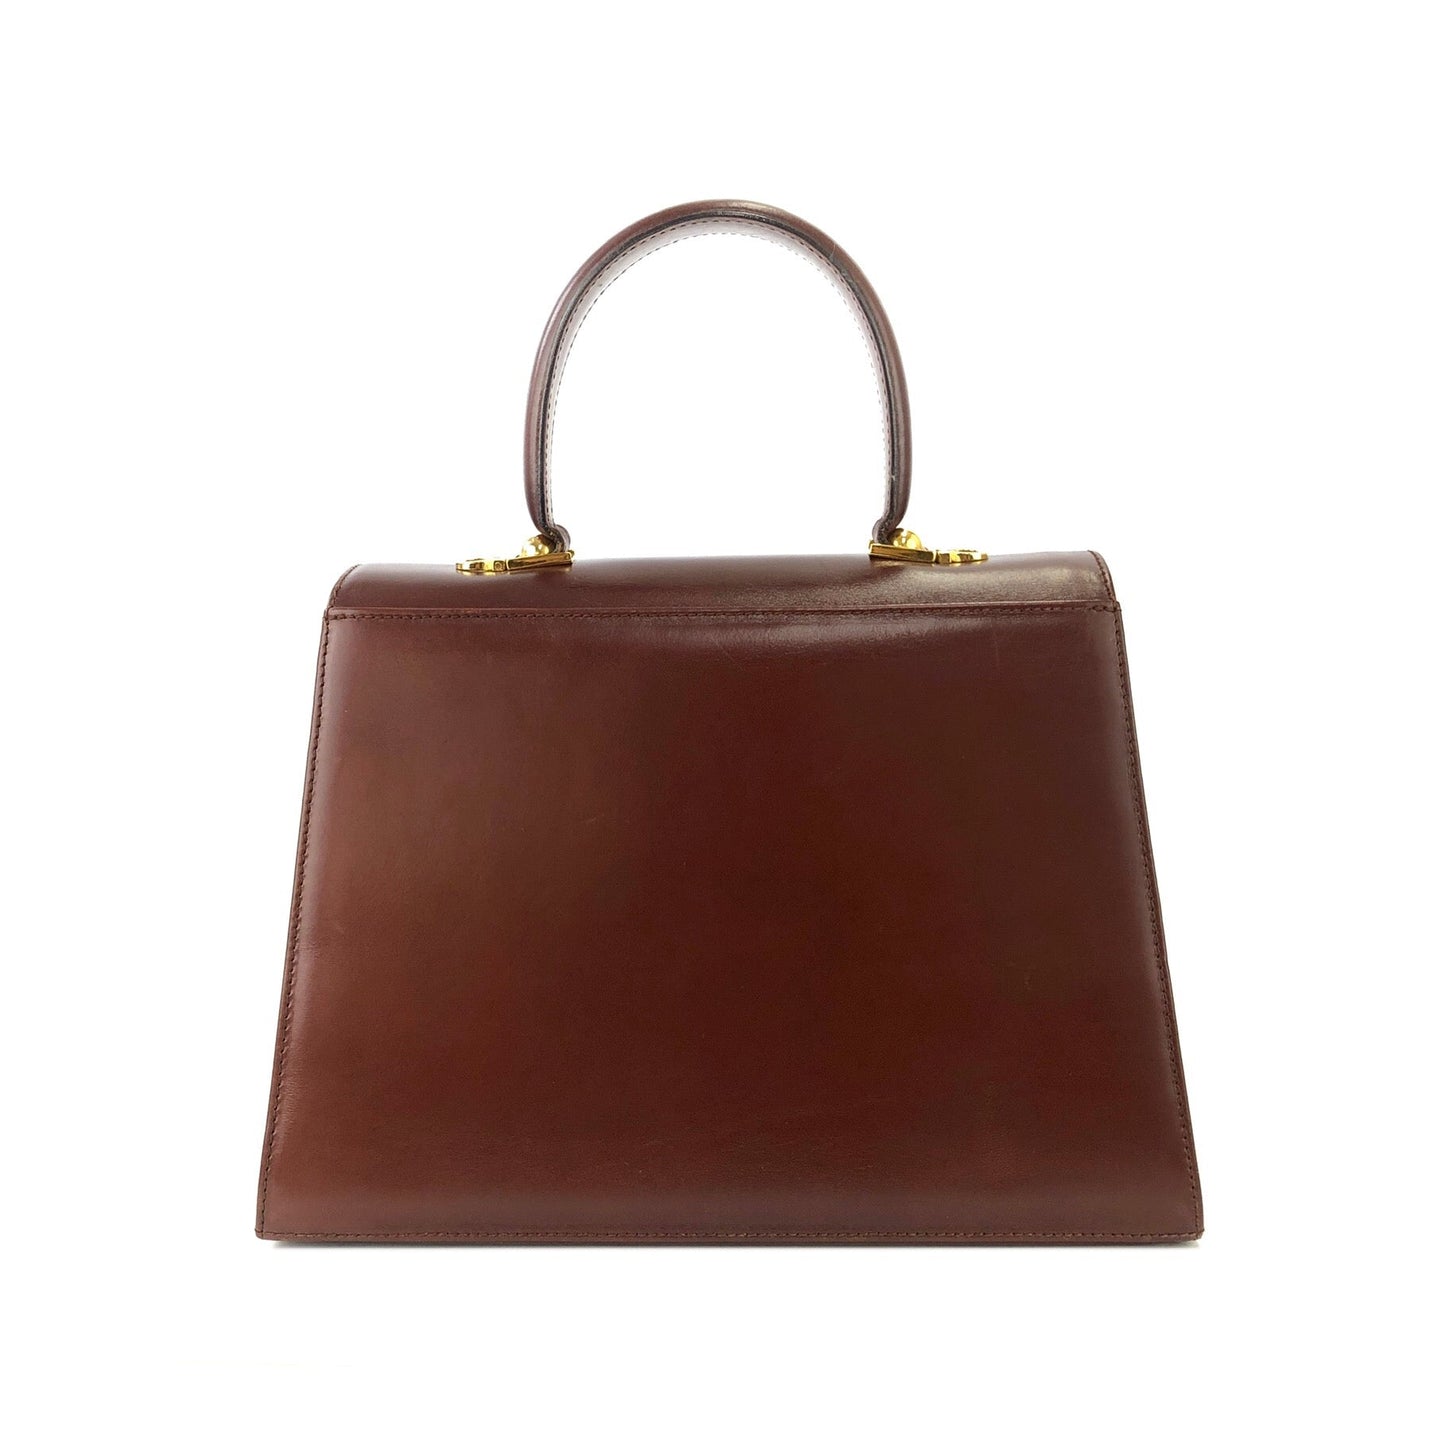 Salvatore Ferragamo Gancini Crossbody Shoulderbag Handbag Brown Vintage Old m4cw6p